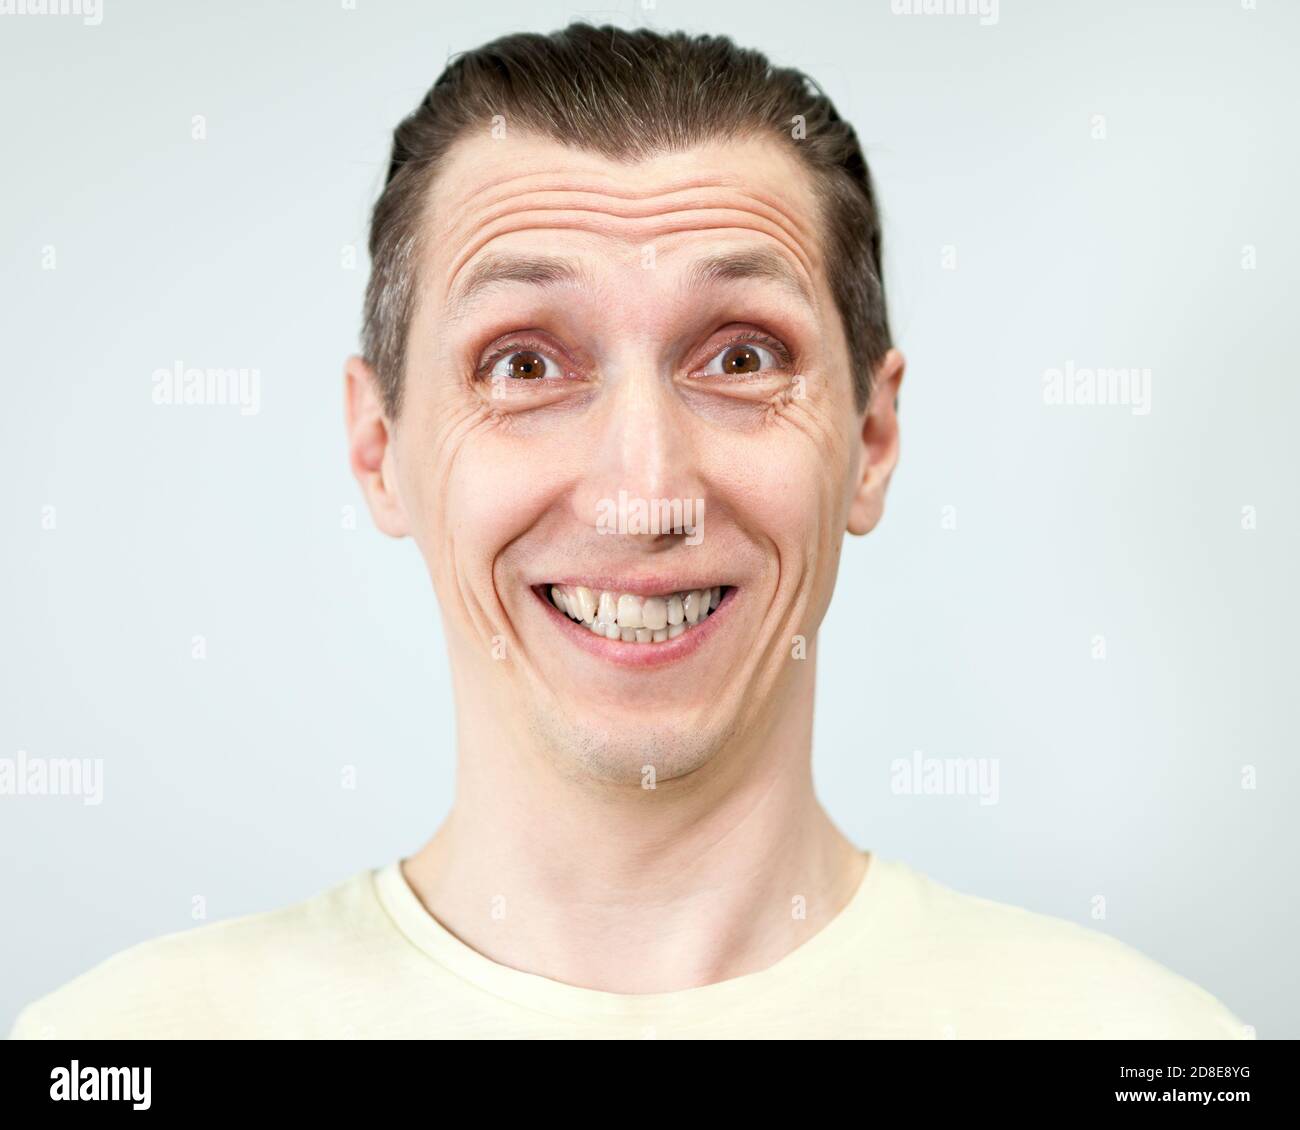 Porträt eines Mannes mit einem dummen breiten toothy Lächeln, grauer Hintergrund, Emotionen-Serie. Stockfoto